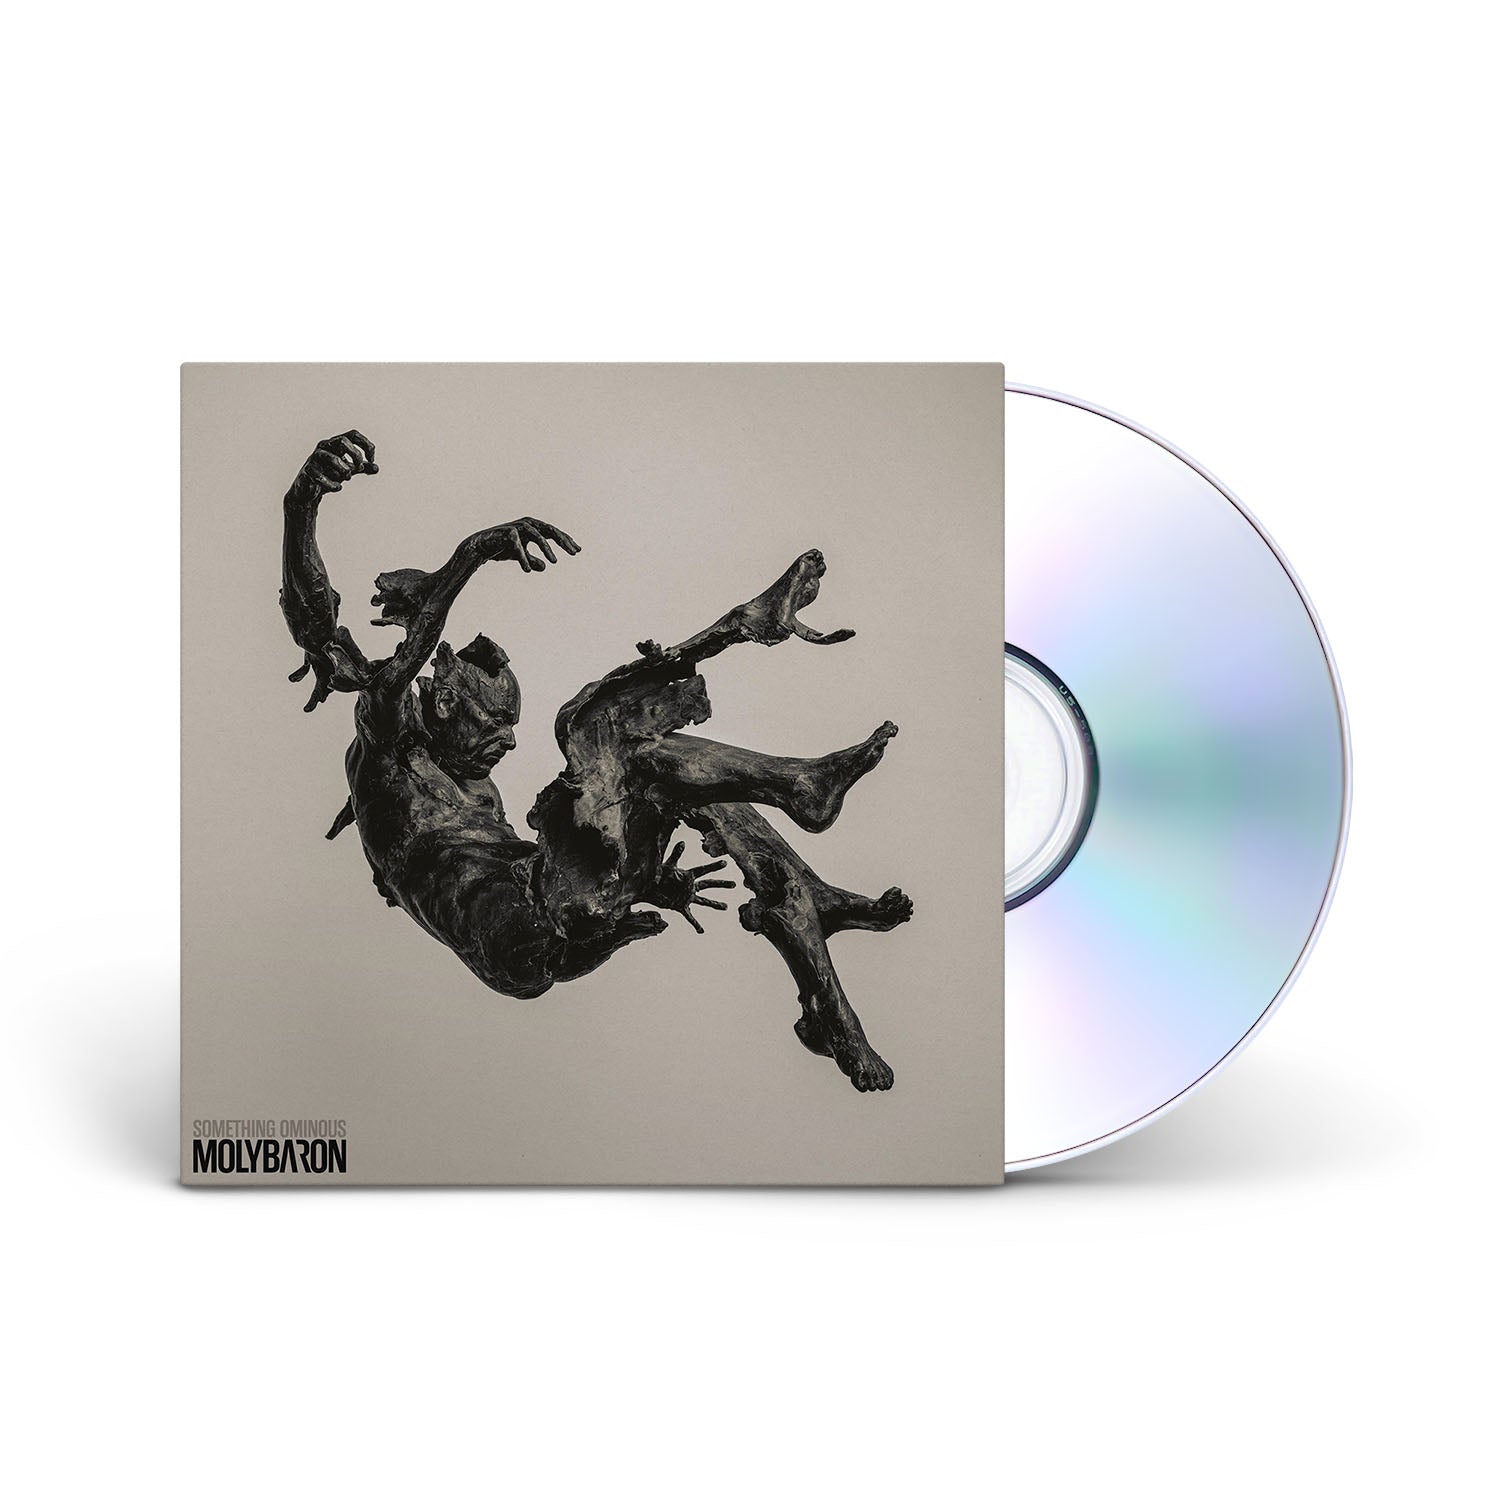 MOLYBARON - SOMETHING OMINOUS - CD